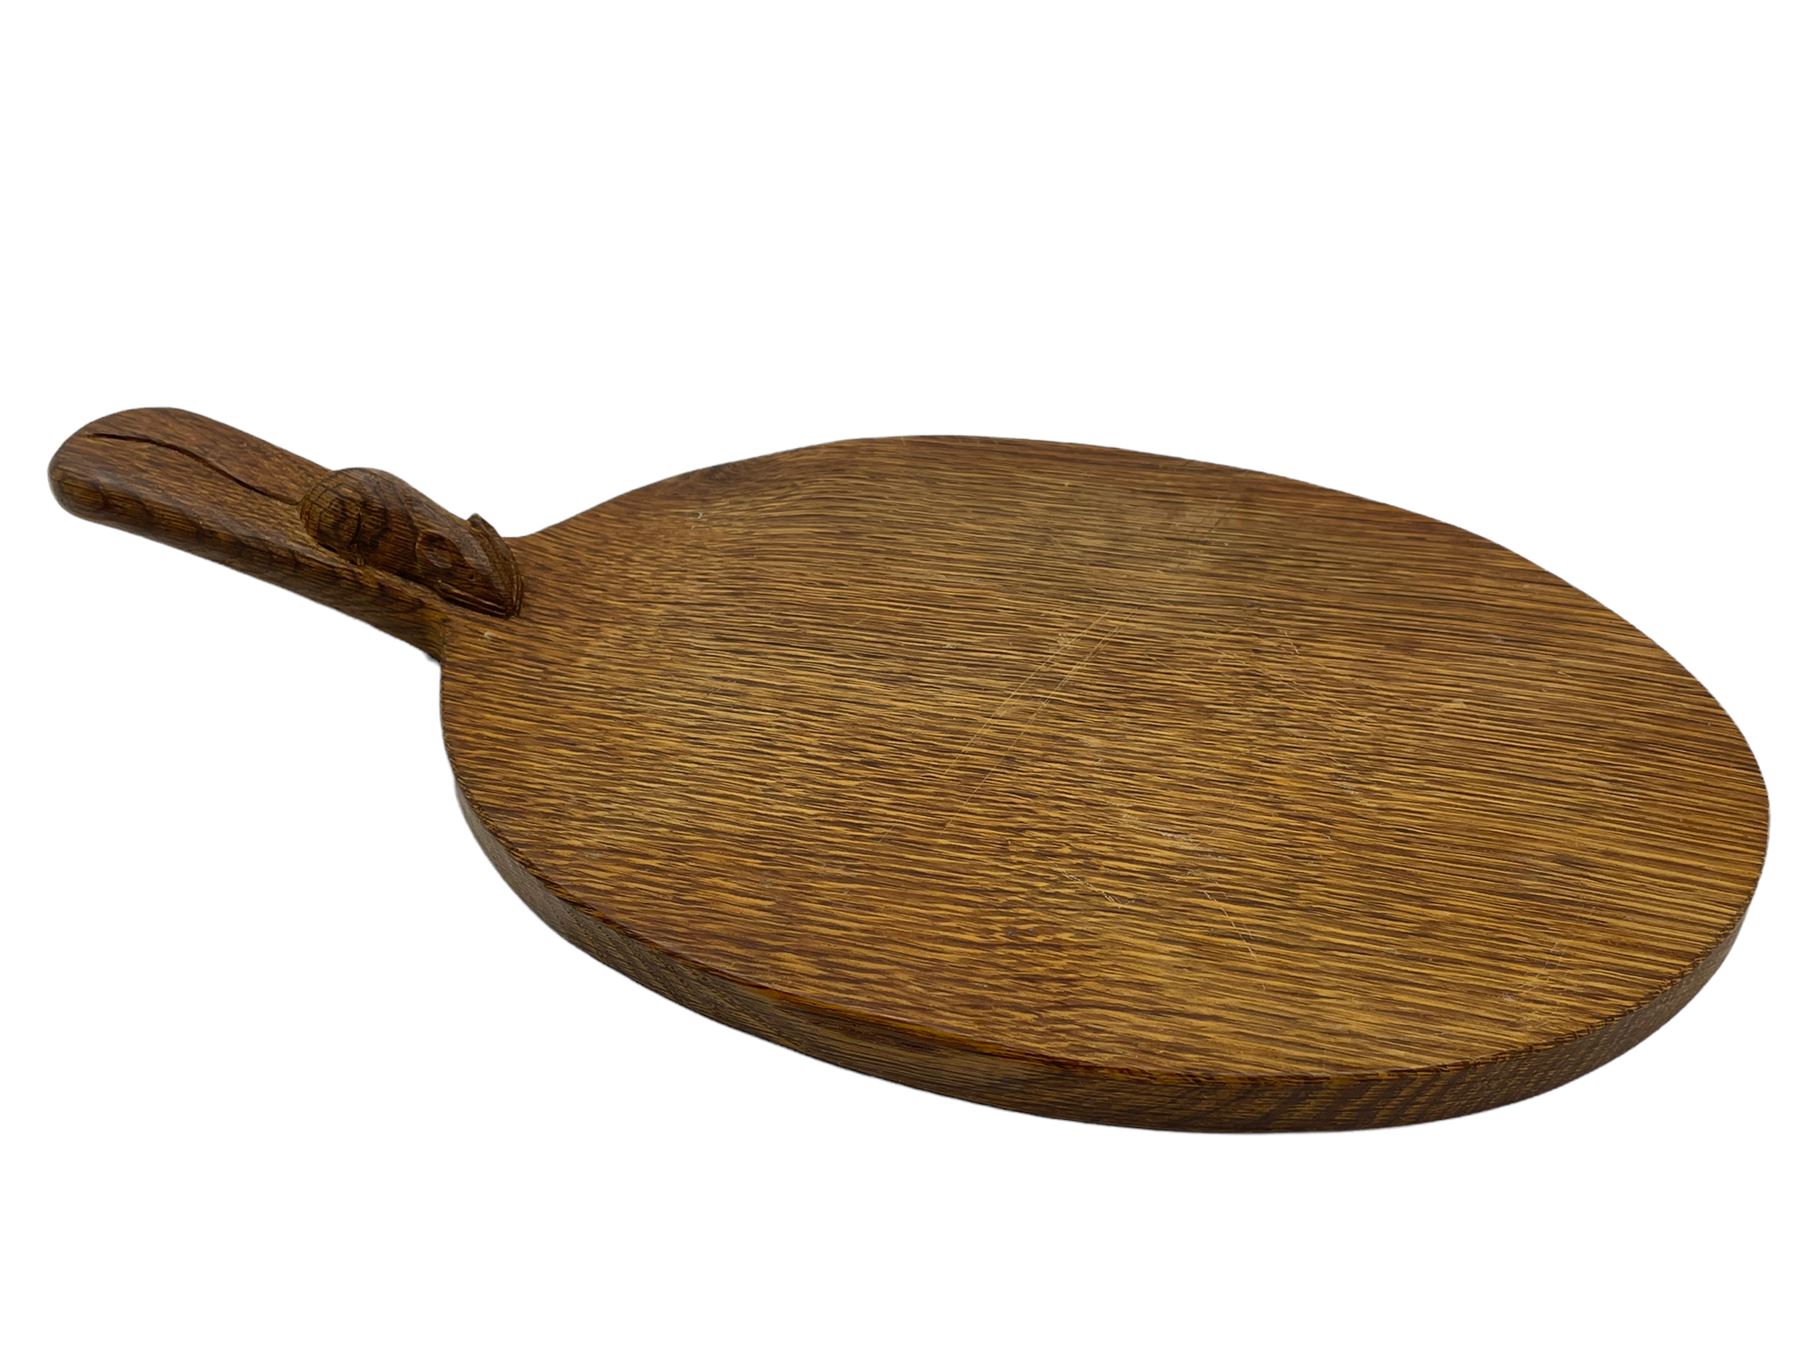 Mouseman - adzed oak cheeseboard - Image 3 of 6